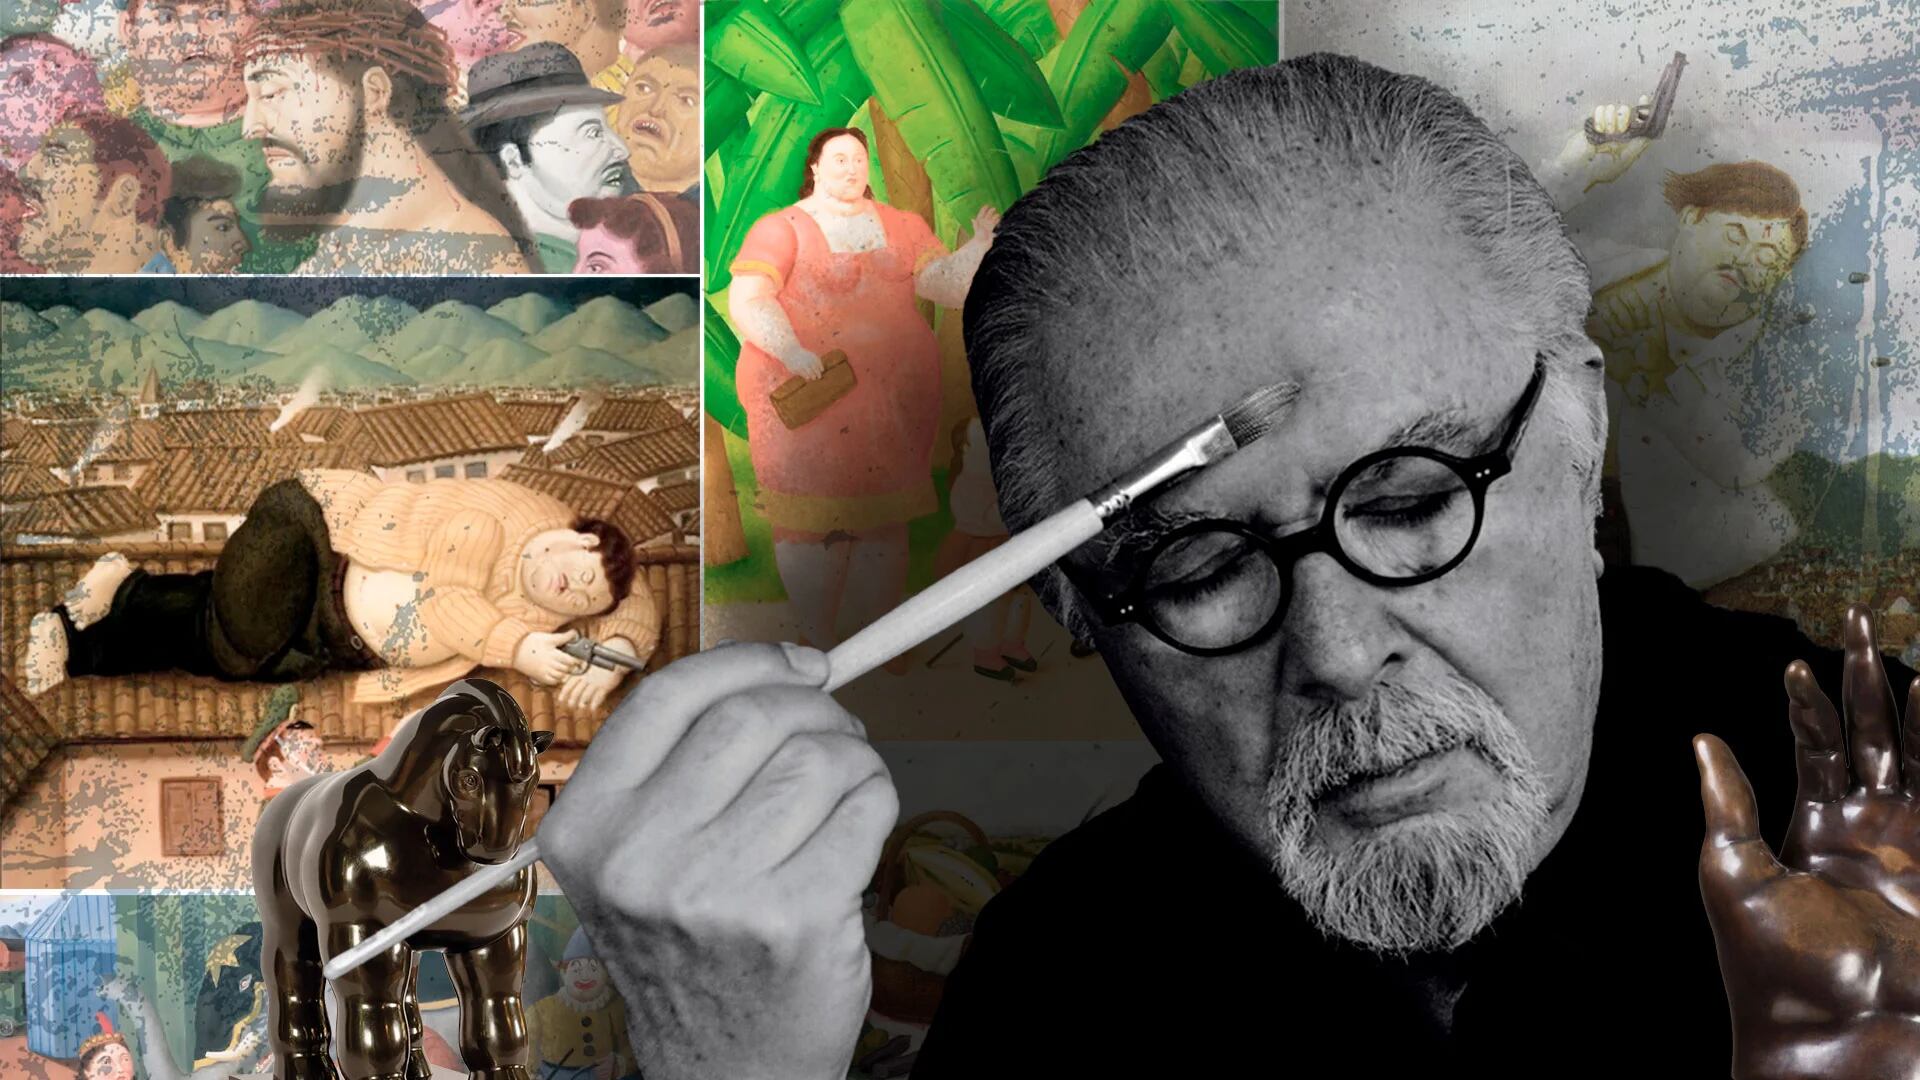 La muerte de Botero en los medios del mundo: “El artista colombiano más universal”